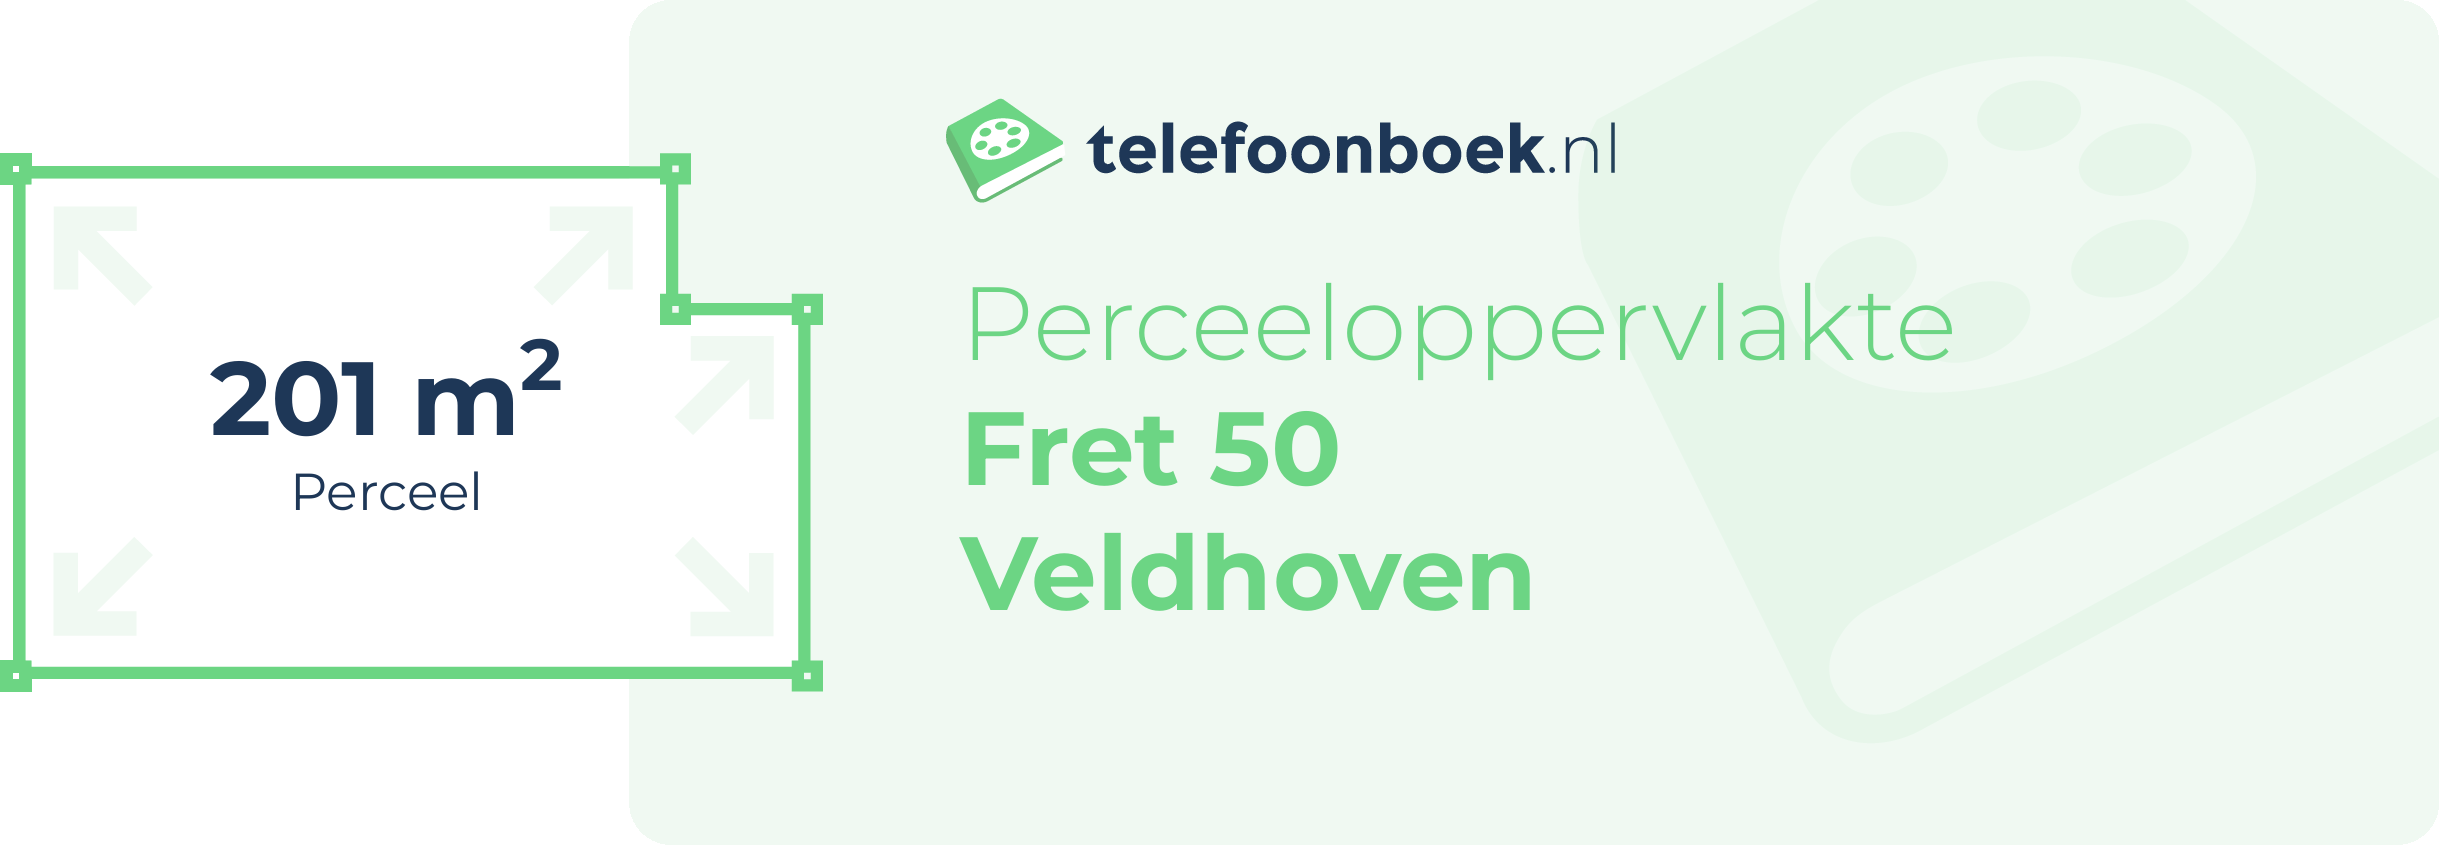 Perceeloppervlakte Fret 50 Veldhoven